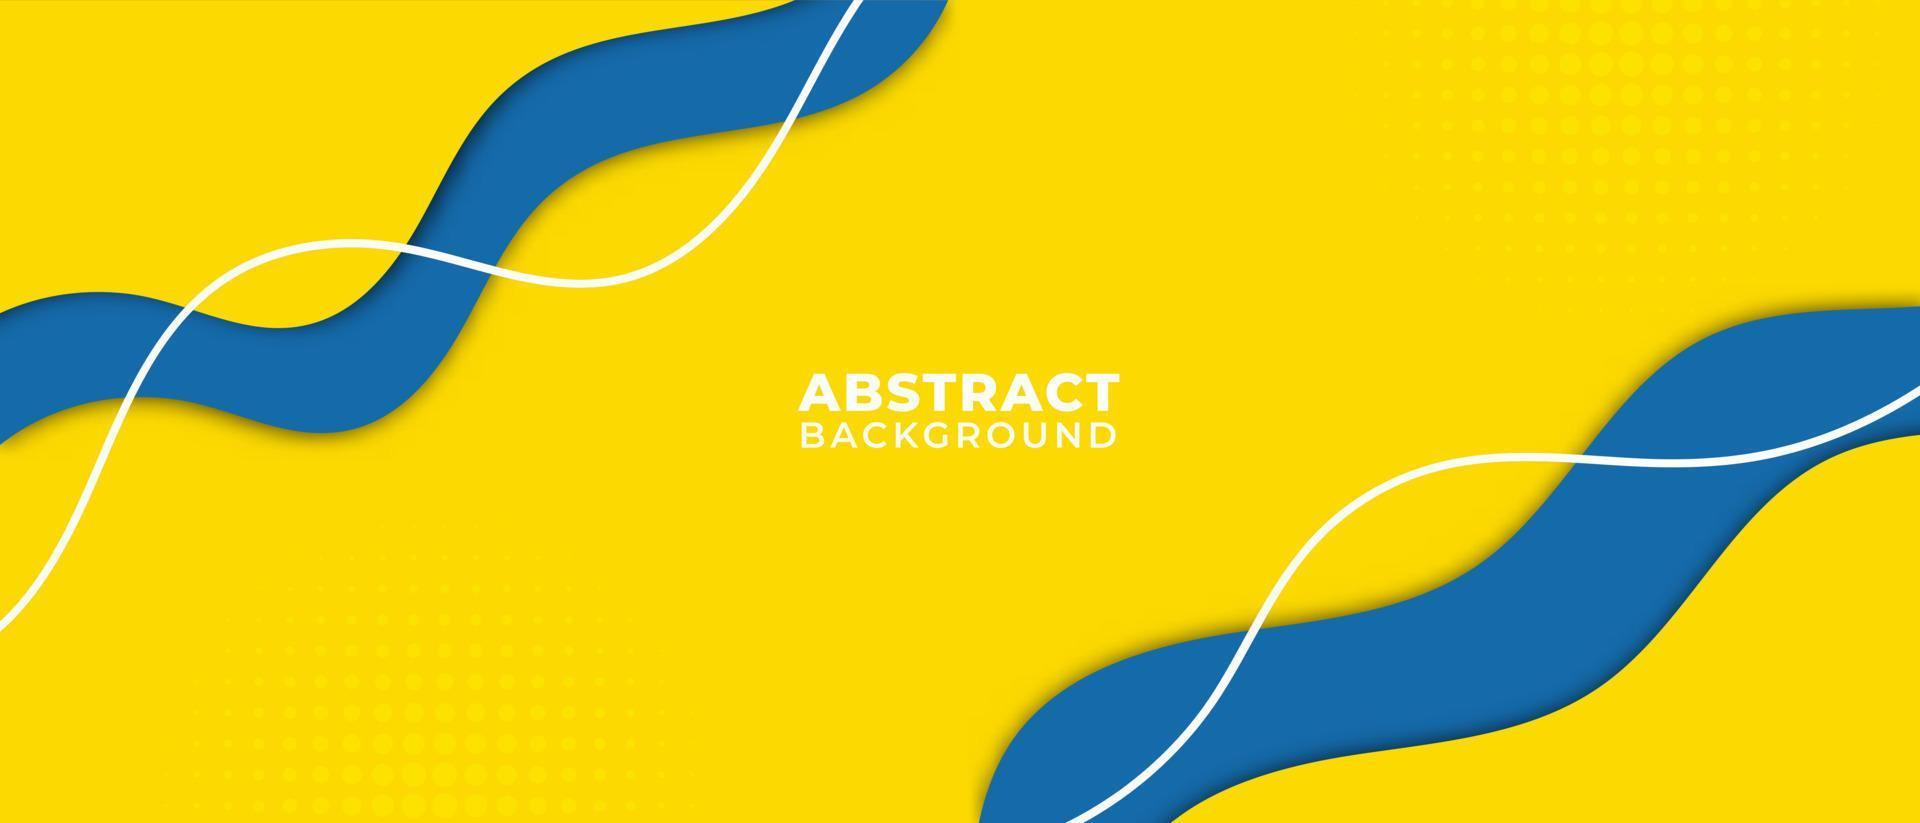 minimalistische en moderne toekomstige abstracte golvende geometrische gele en blauwe achtergrondontwerpillustratie vector